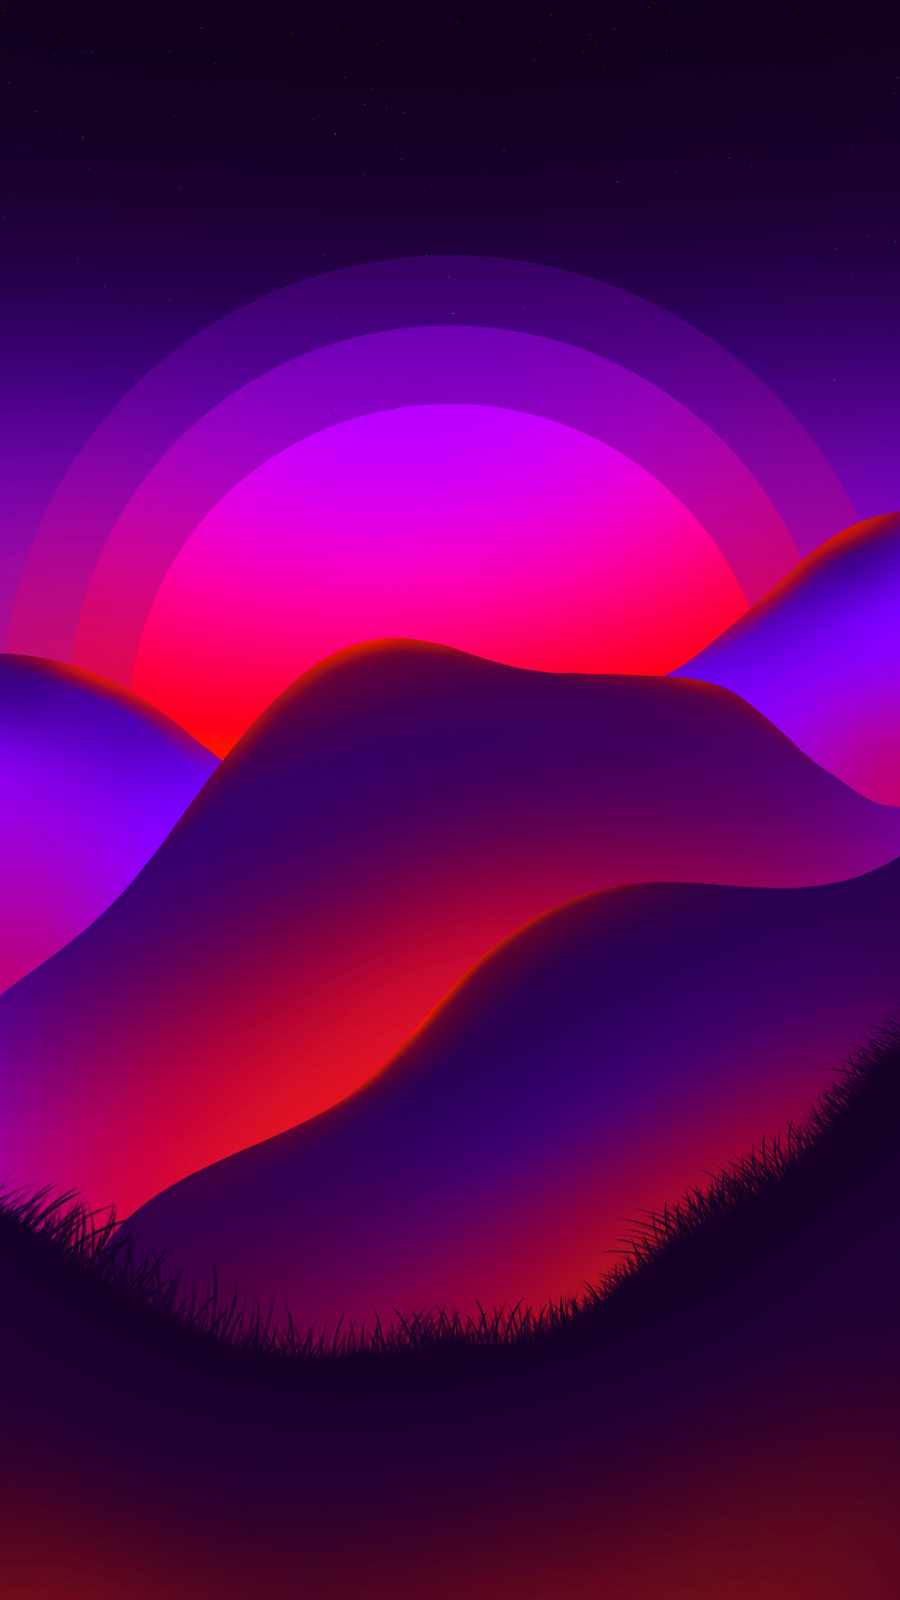 Retro Minimal Sunrise iPhone Wallpaper